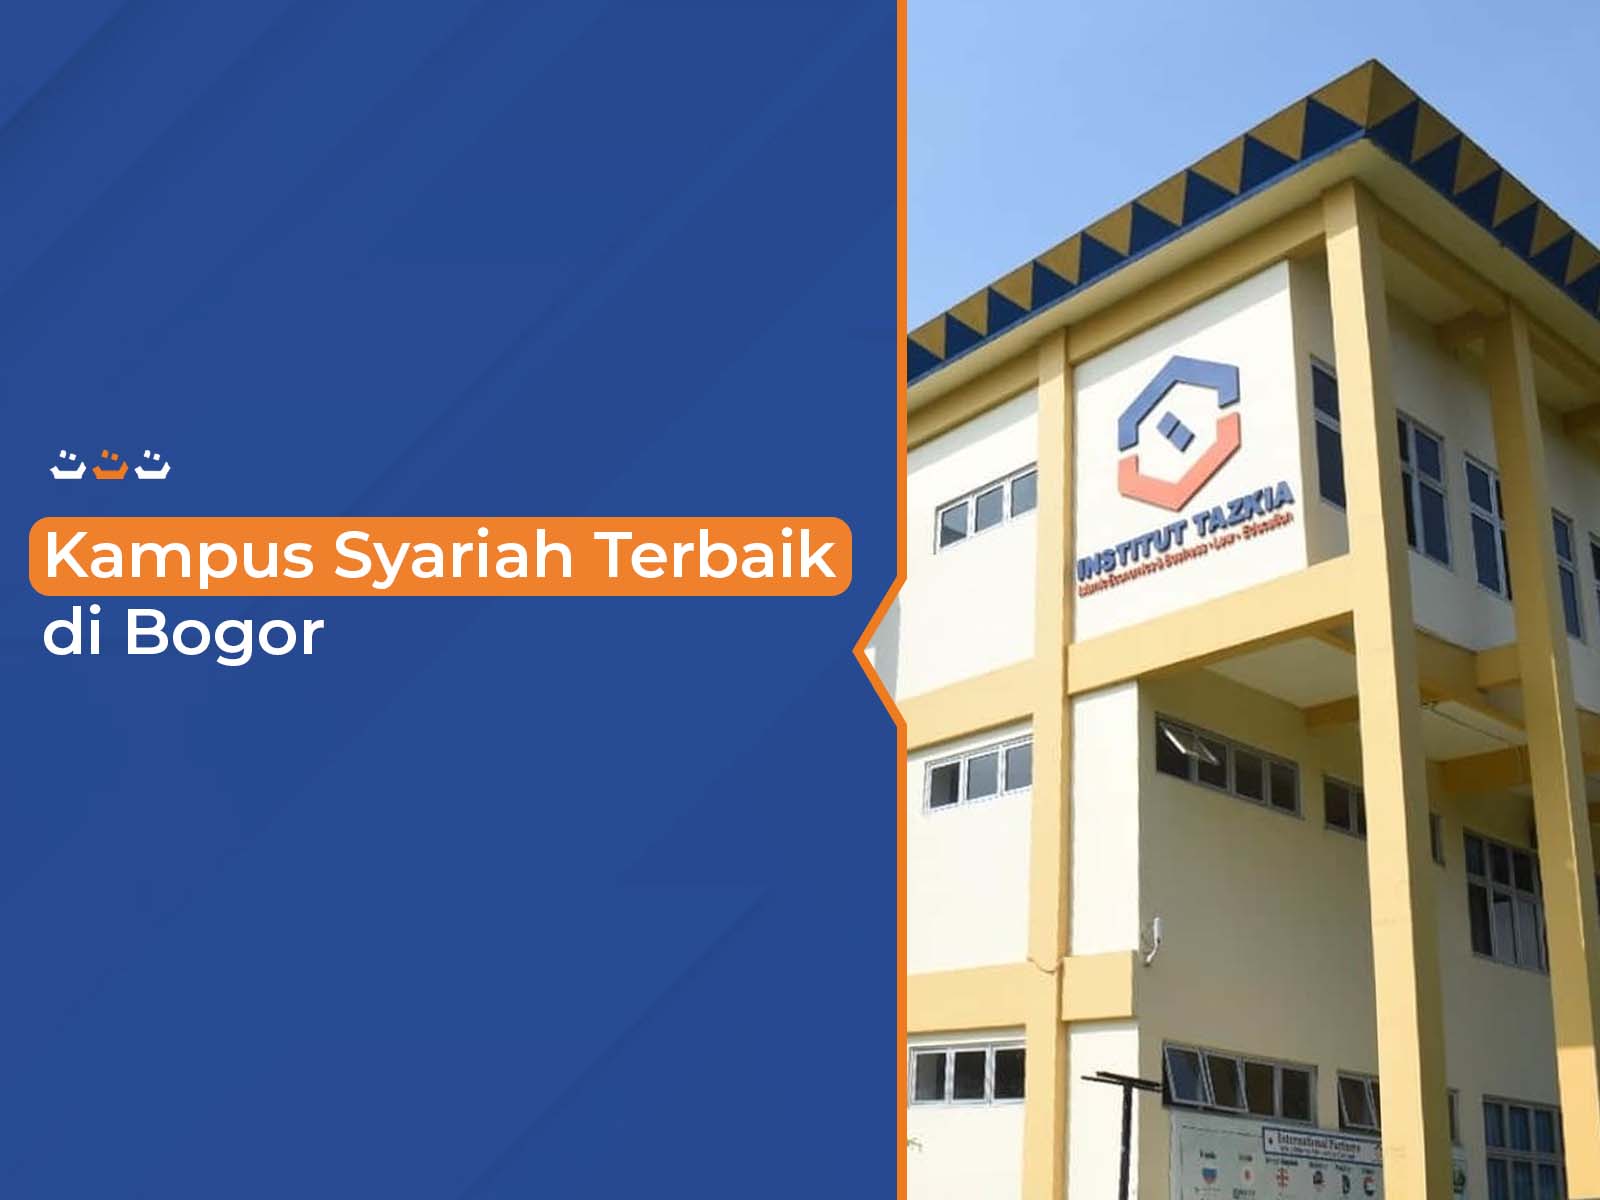 Kampus Syariah Terbaik di Bogor